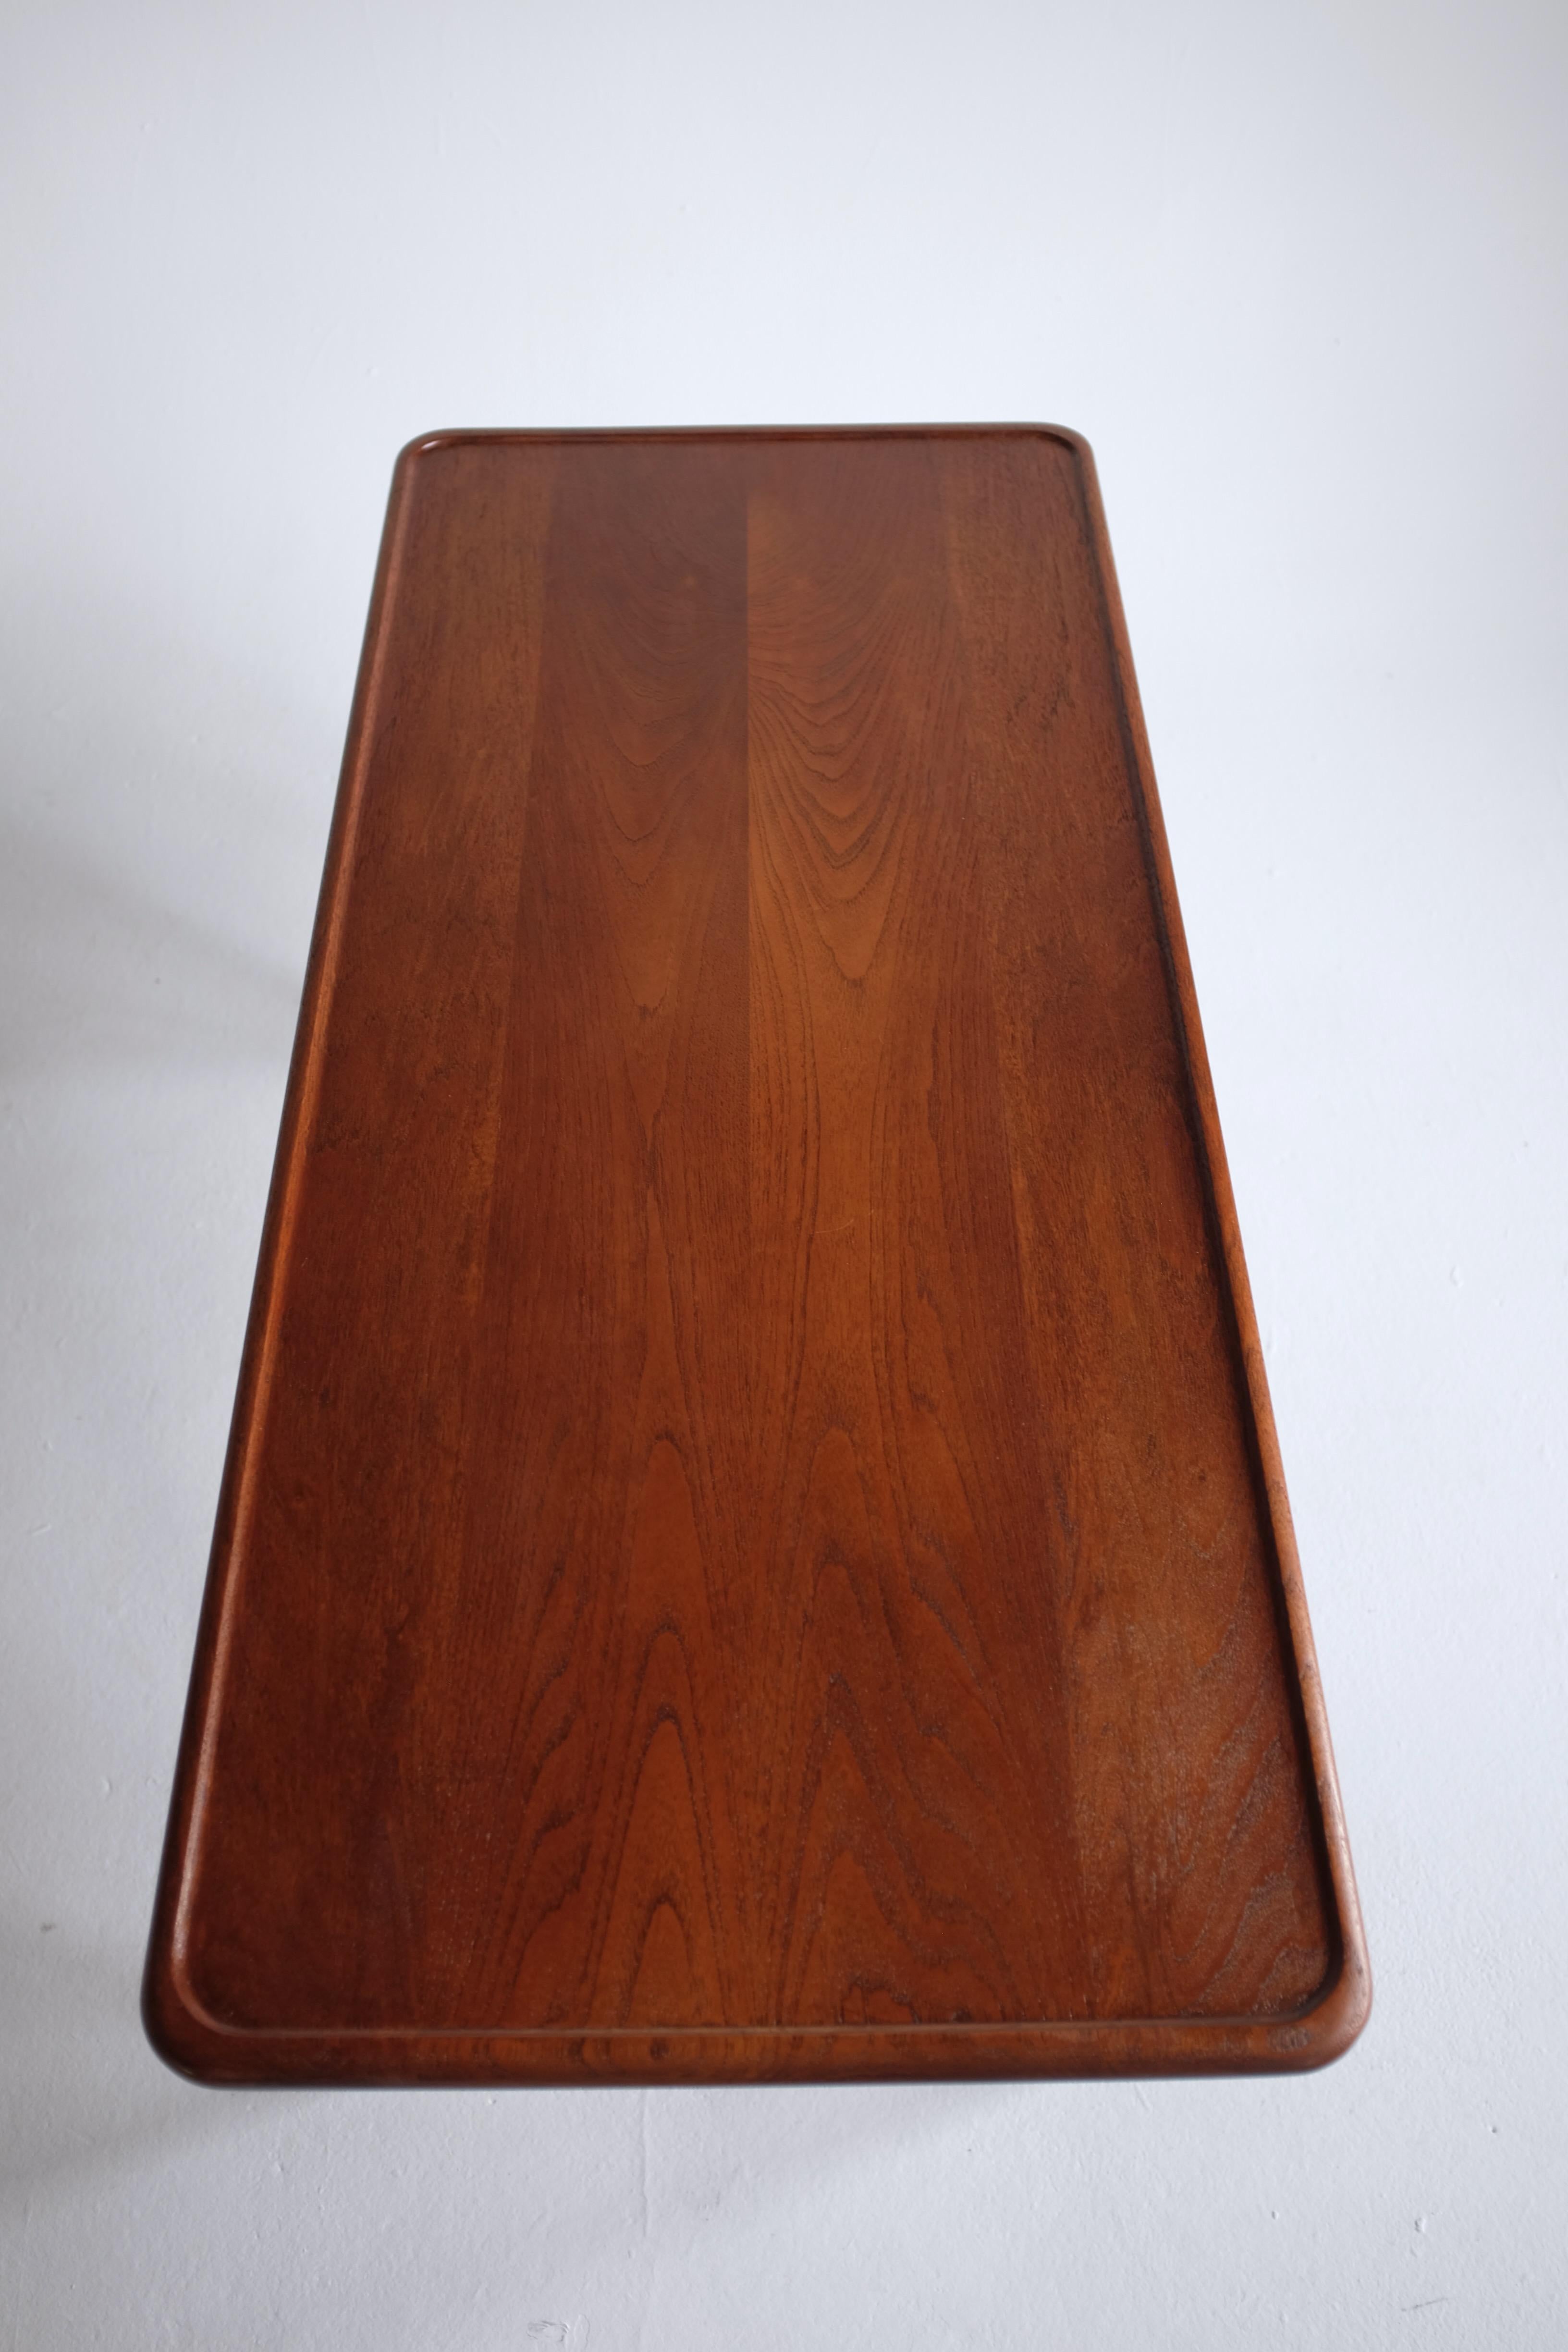 Oak T-11 Coffee Table by Hans J. Wegner For Sale